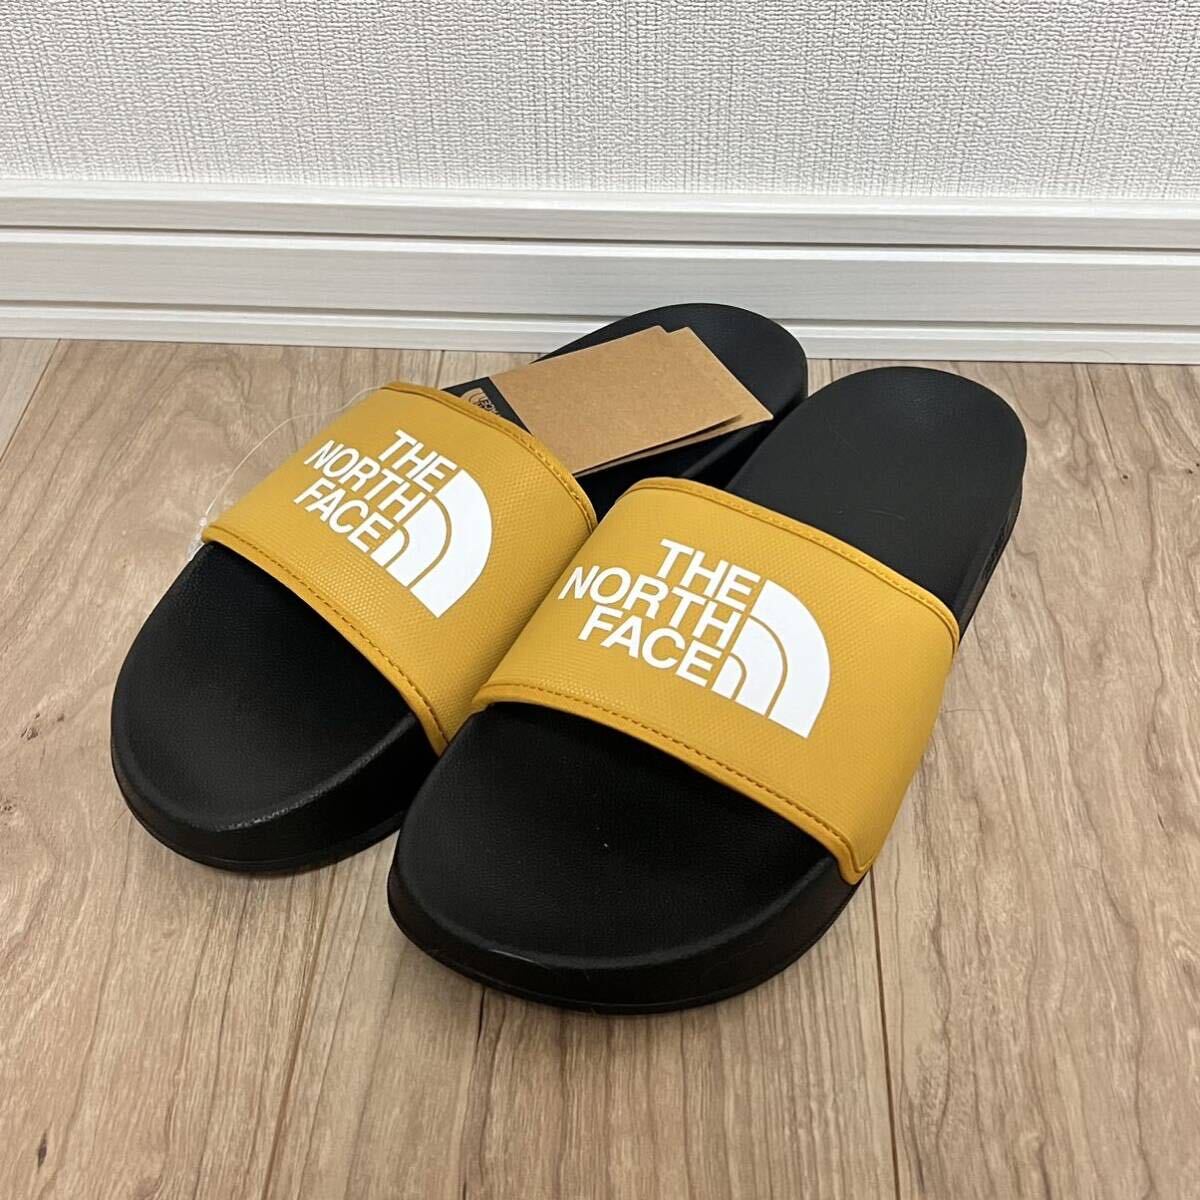 1 иен новый товар North Face сандалии 29cm мужской спорт сандалии шлепанцы для душа THE NORTH FACE сандалии spo солнечный большой размер 